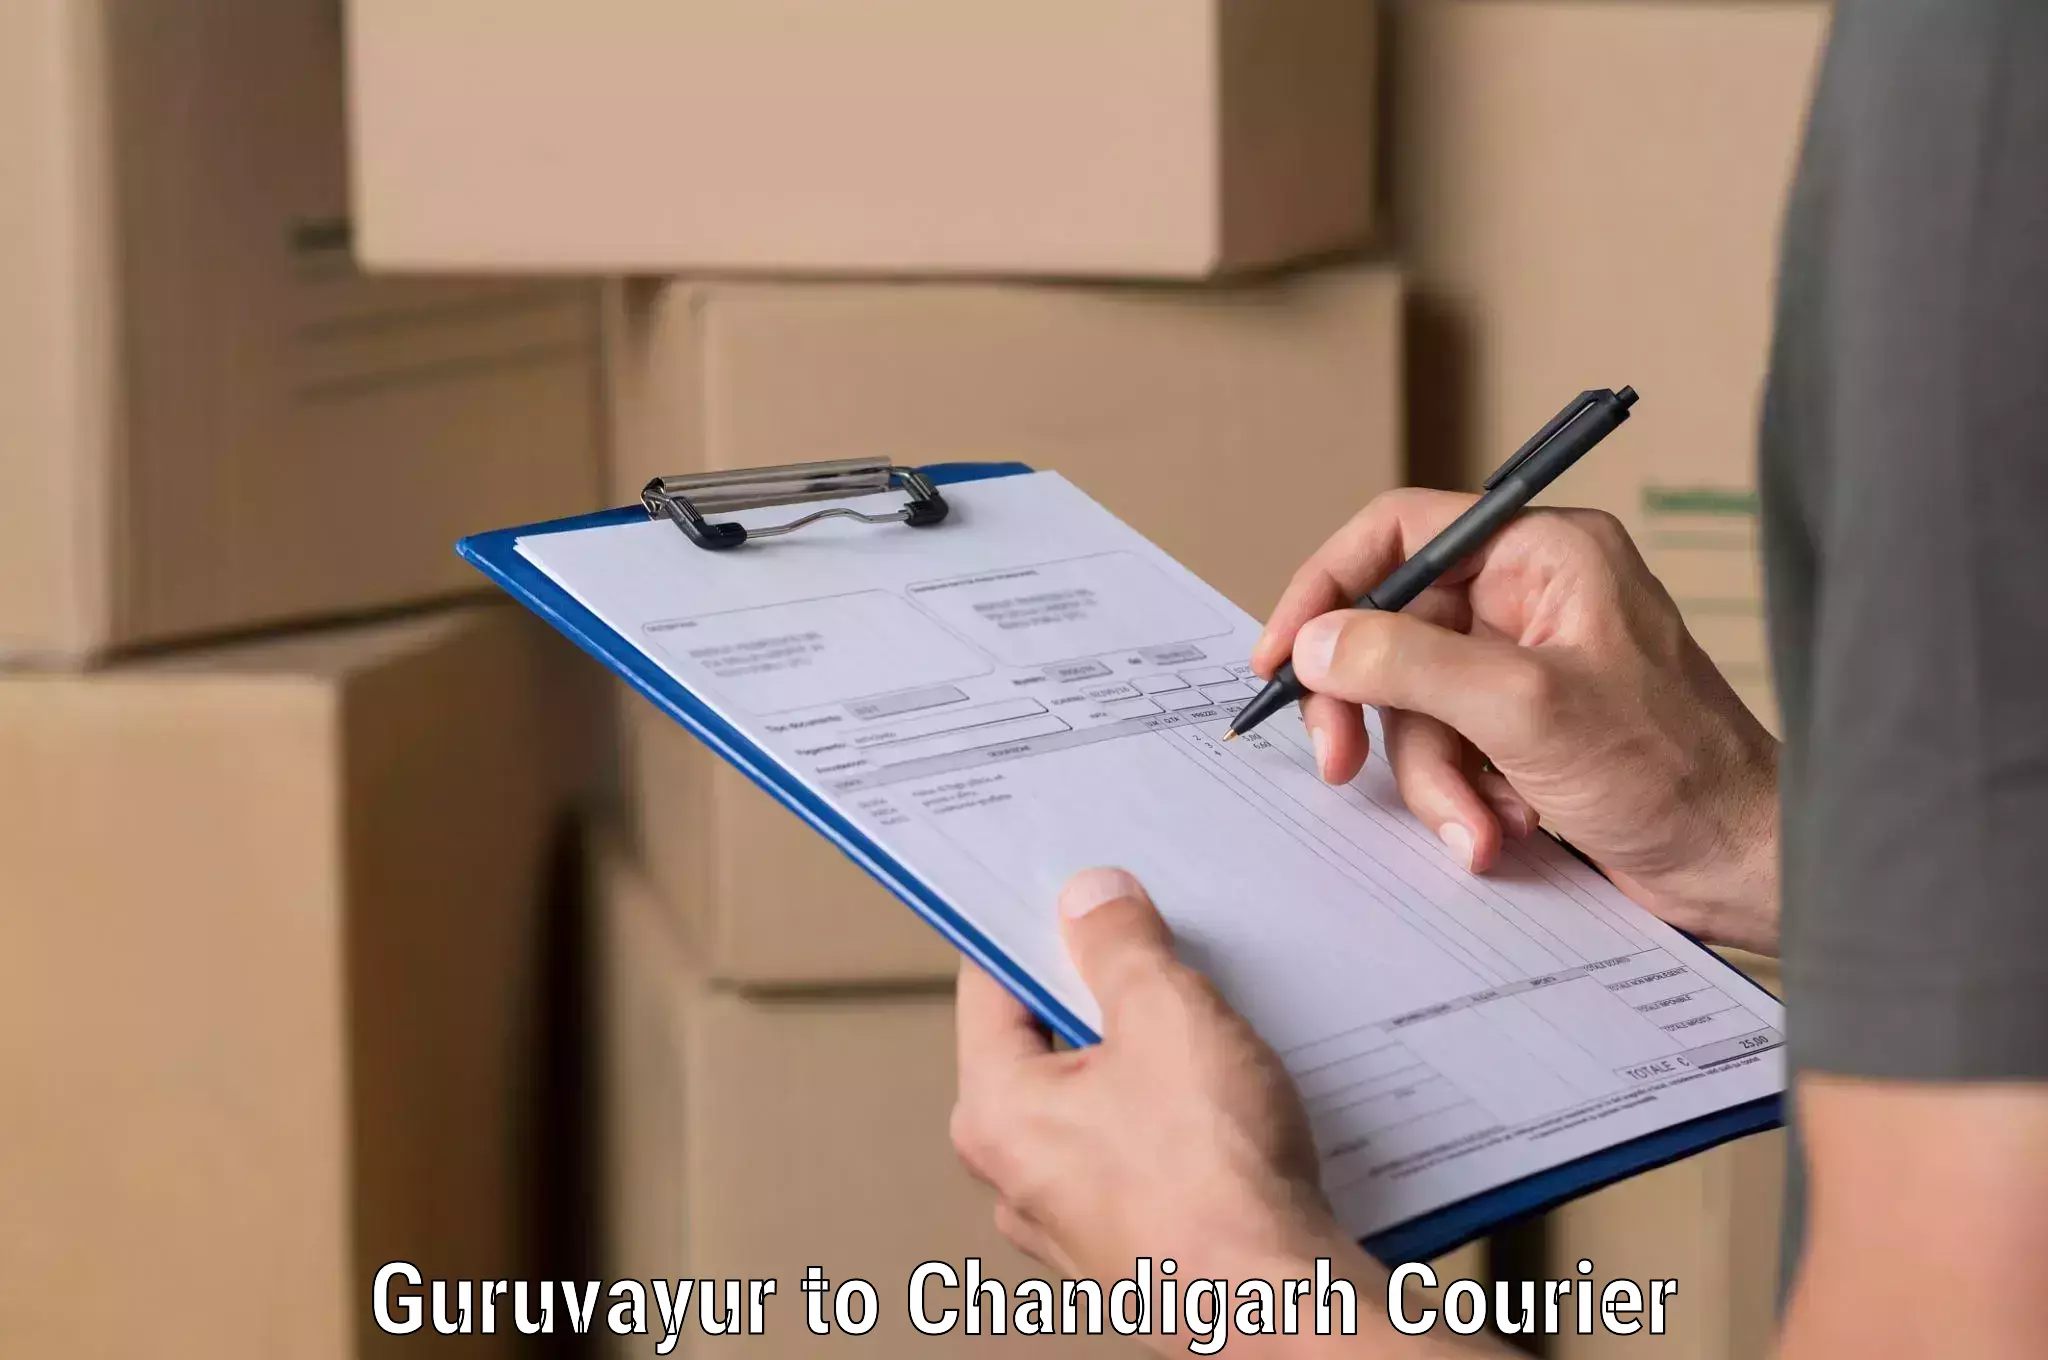 Bulk shipment Guruvayur to Chandigarh